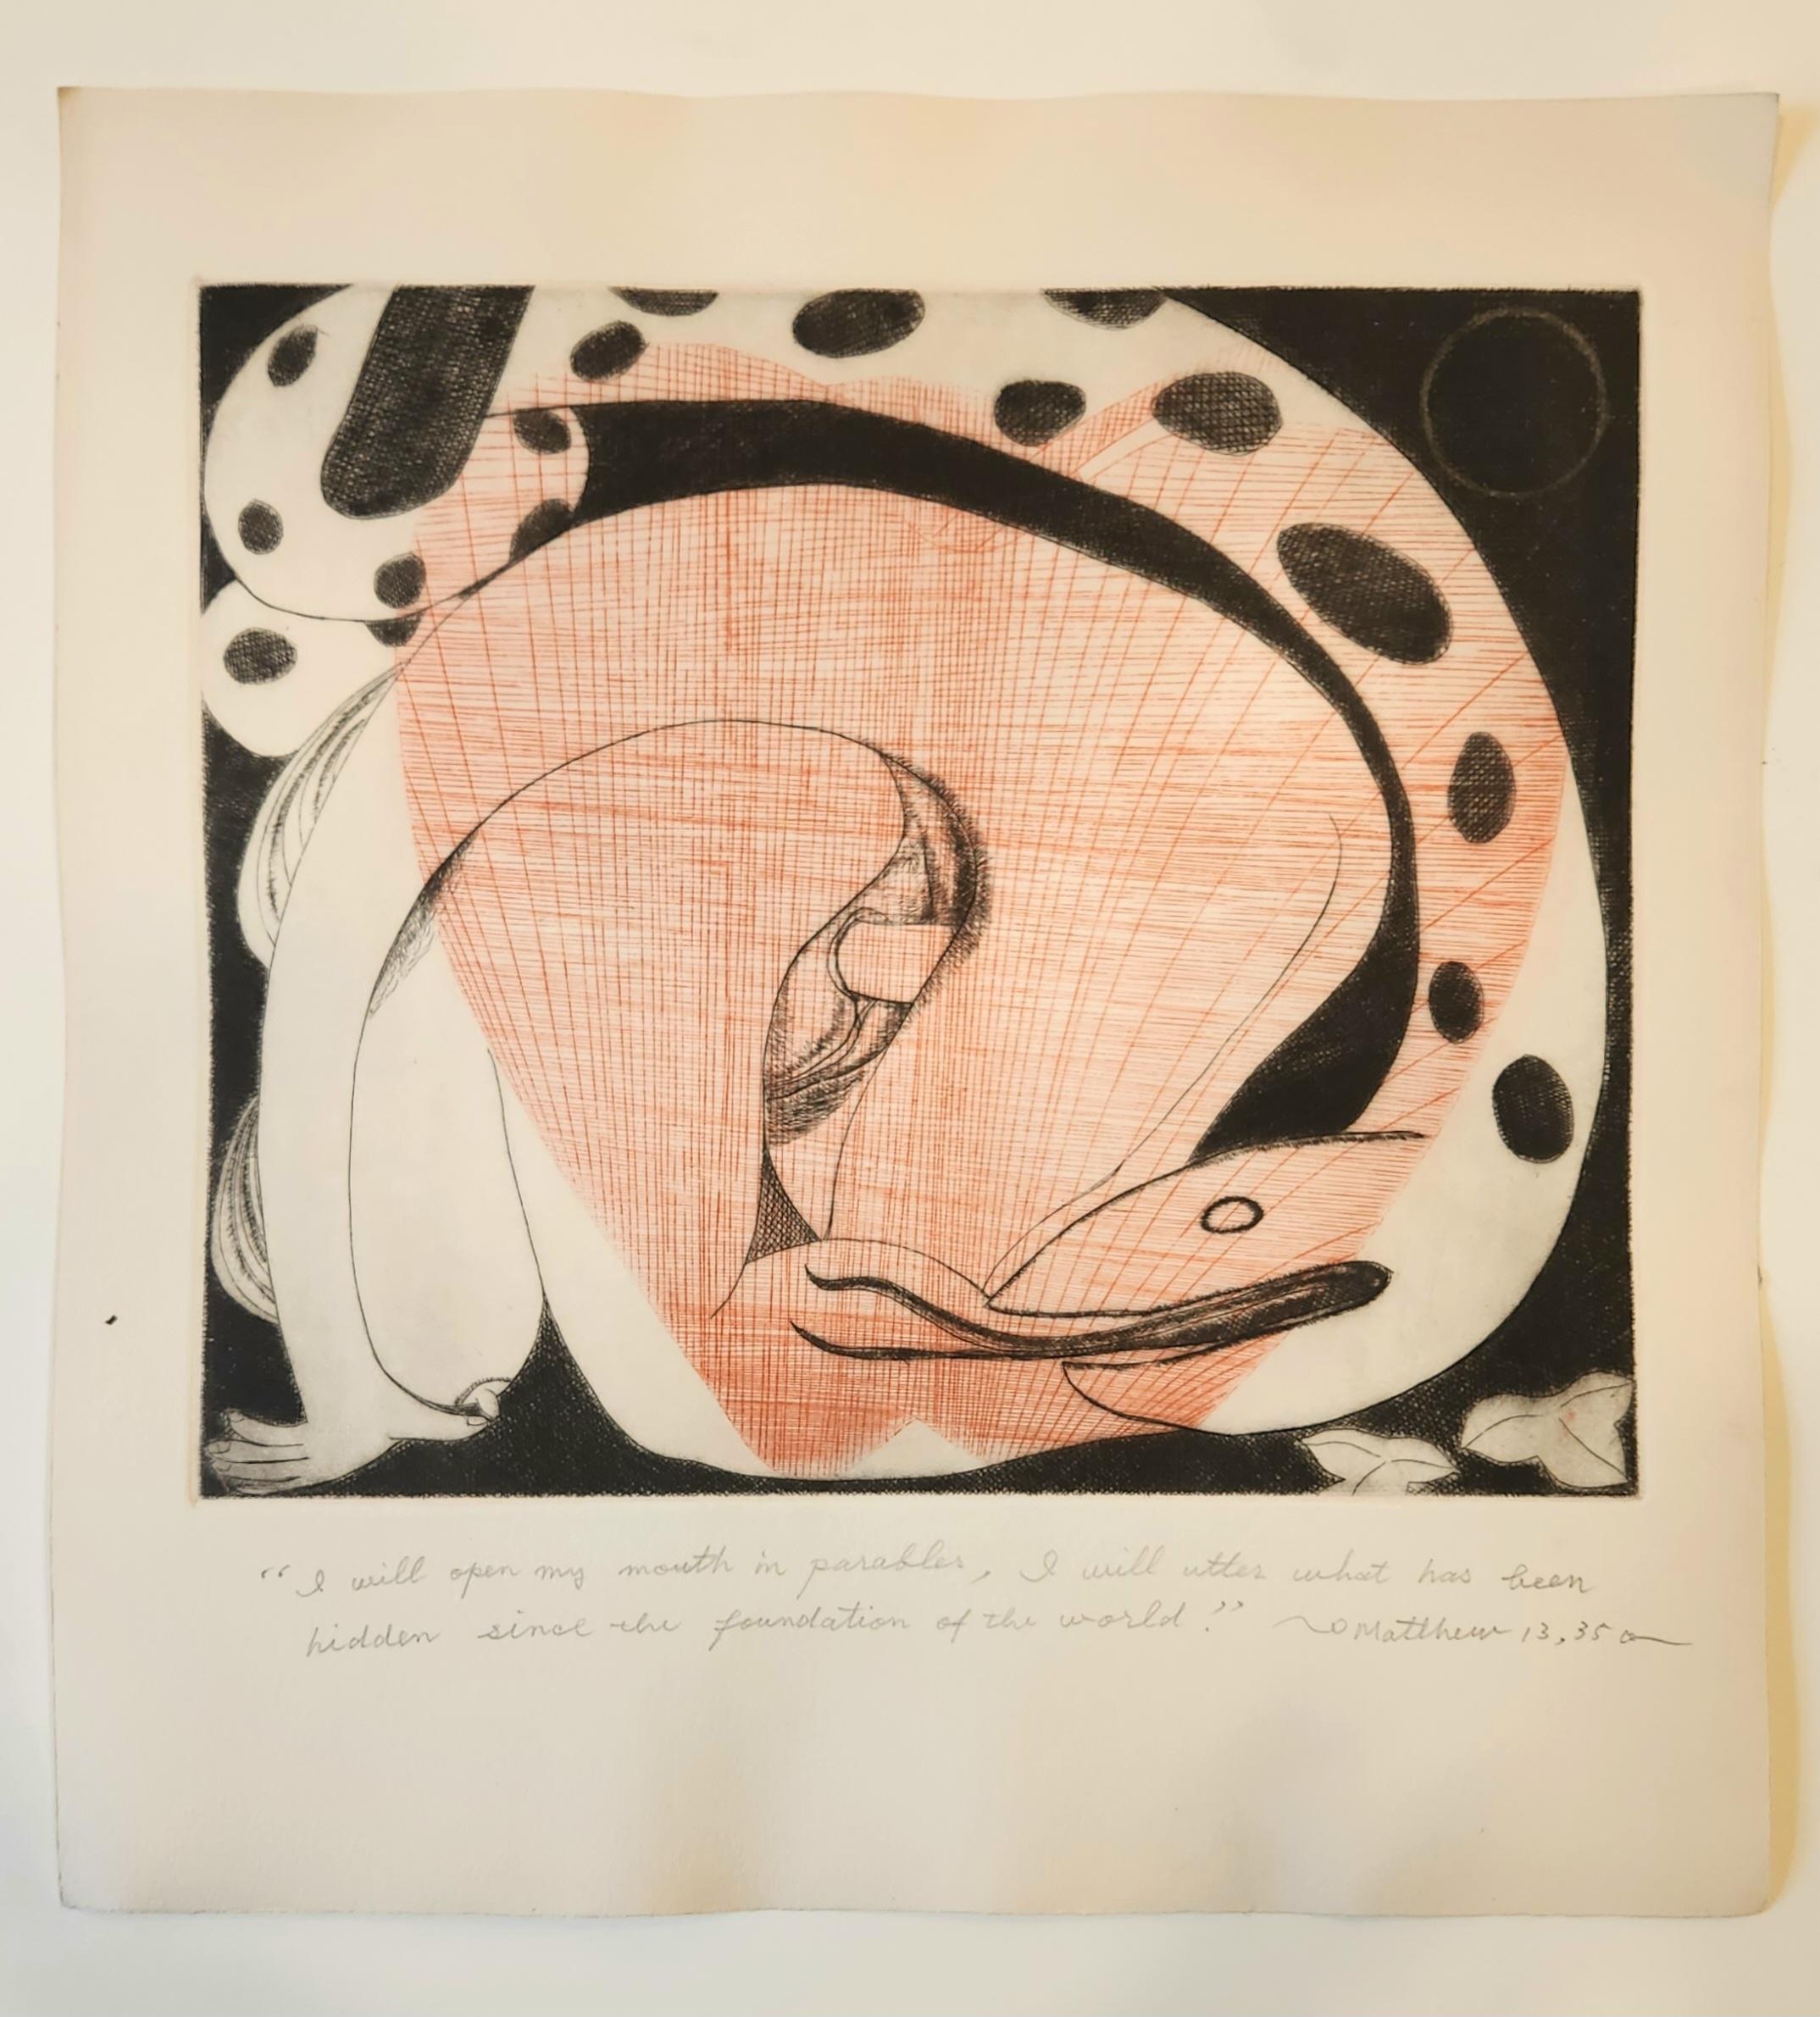 Der japanische Künstler Kawakami lebte und arbeitete in Soho, NYC, und schuf diese meisterhaften Radierungen. Diese wurden von einem Kollegen der abstrakten New Yorker Malschule erworben, der im selben Gebäude in SOHO wohnte. Dieses Buch ist ein